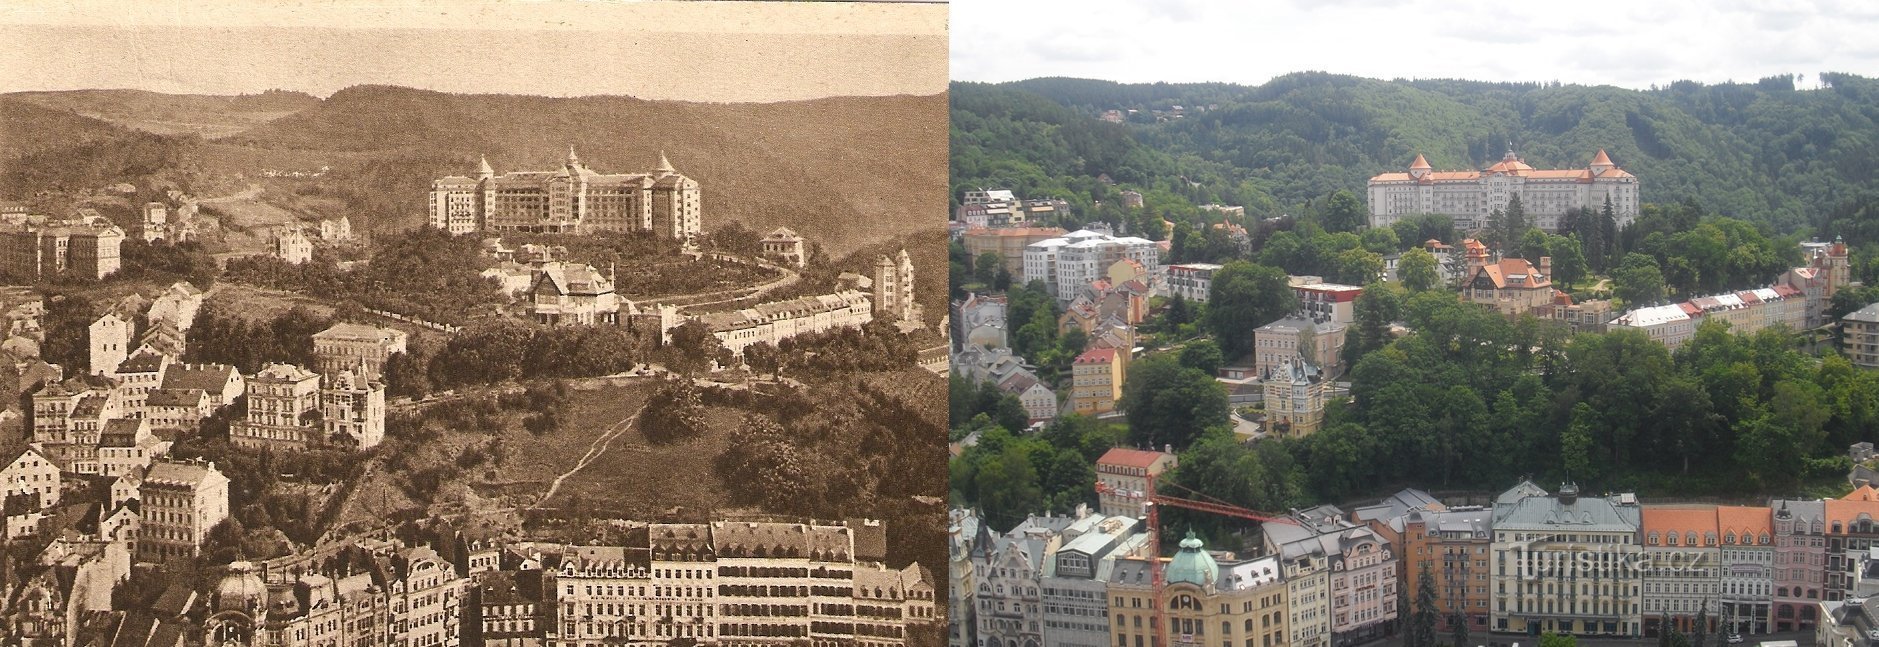 Karlovy Vary på äldre vyer och aktuella bilder